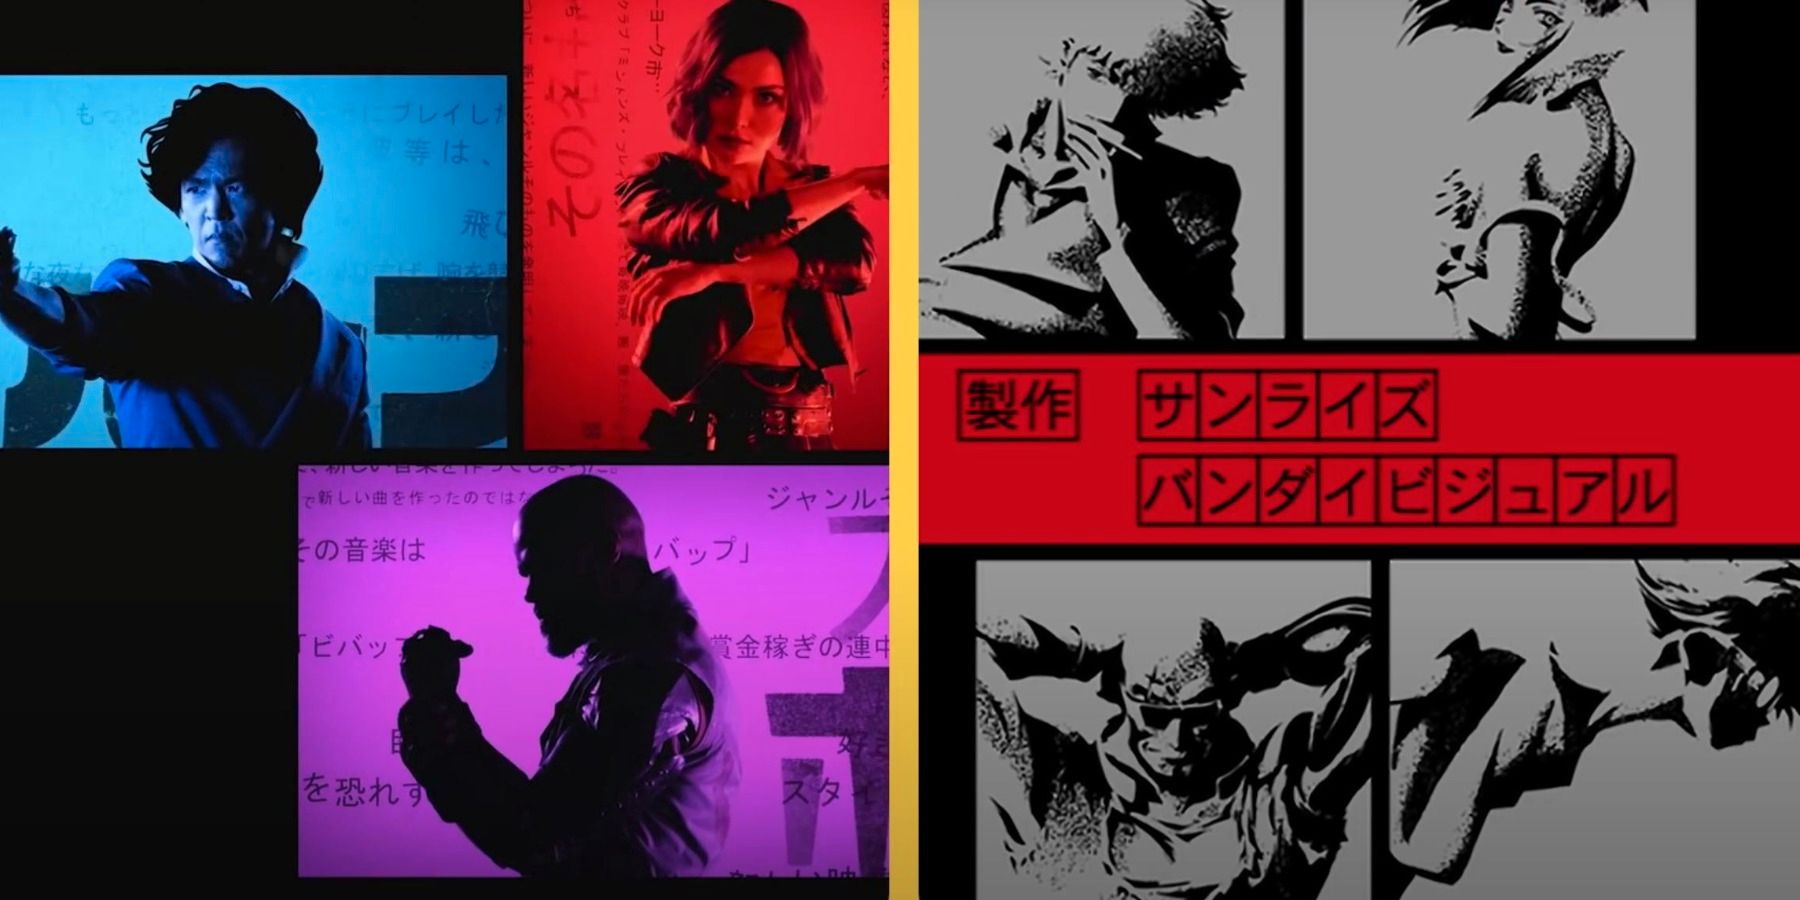 Cowboy Bebops Netflix-intro blir side-by-side-sammenligning med anime